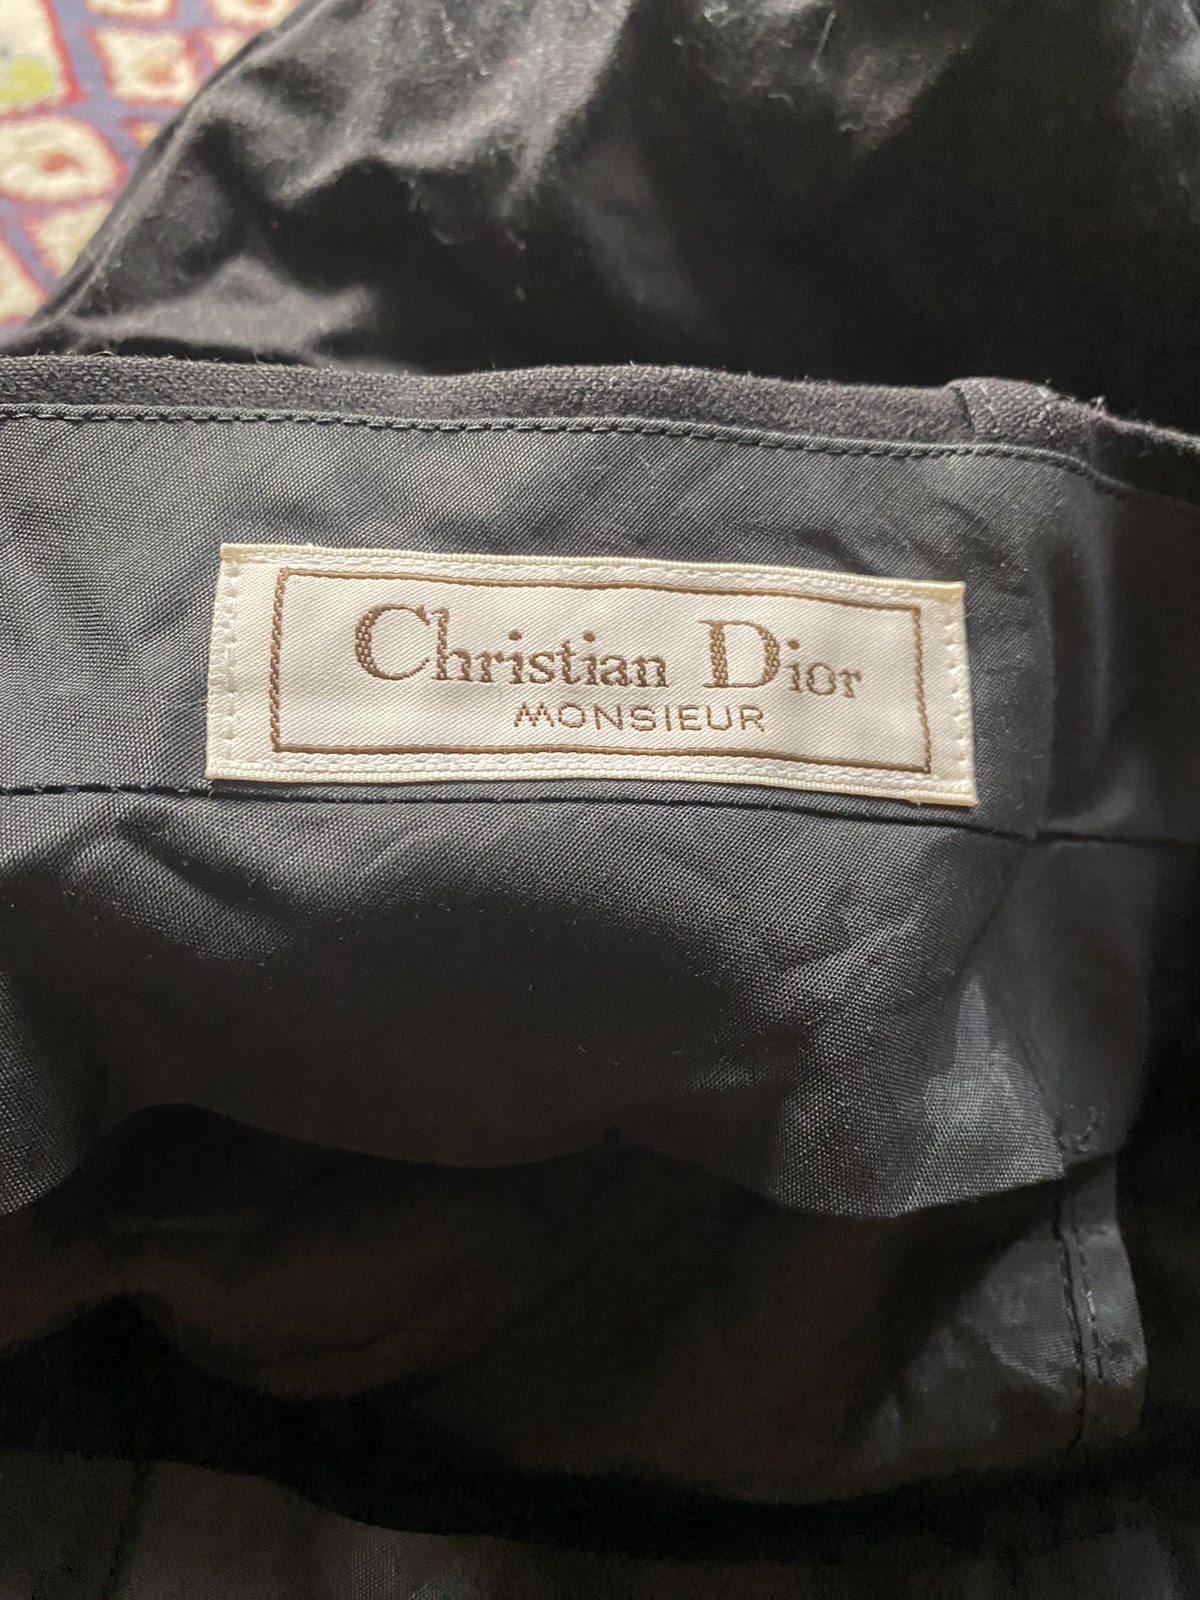 DIOR Christian Dior Monsieur Slack Plain Trousers Pants - 6